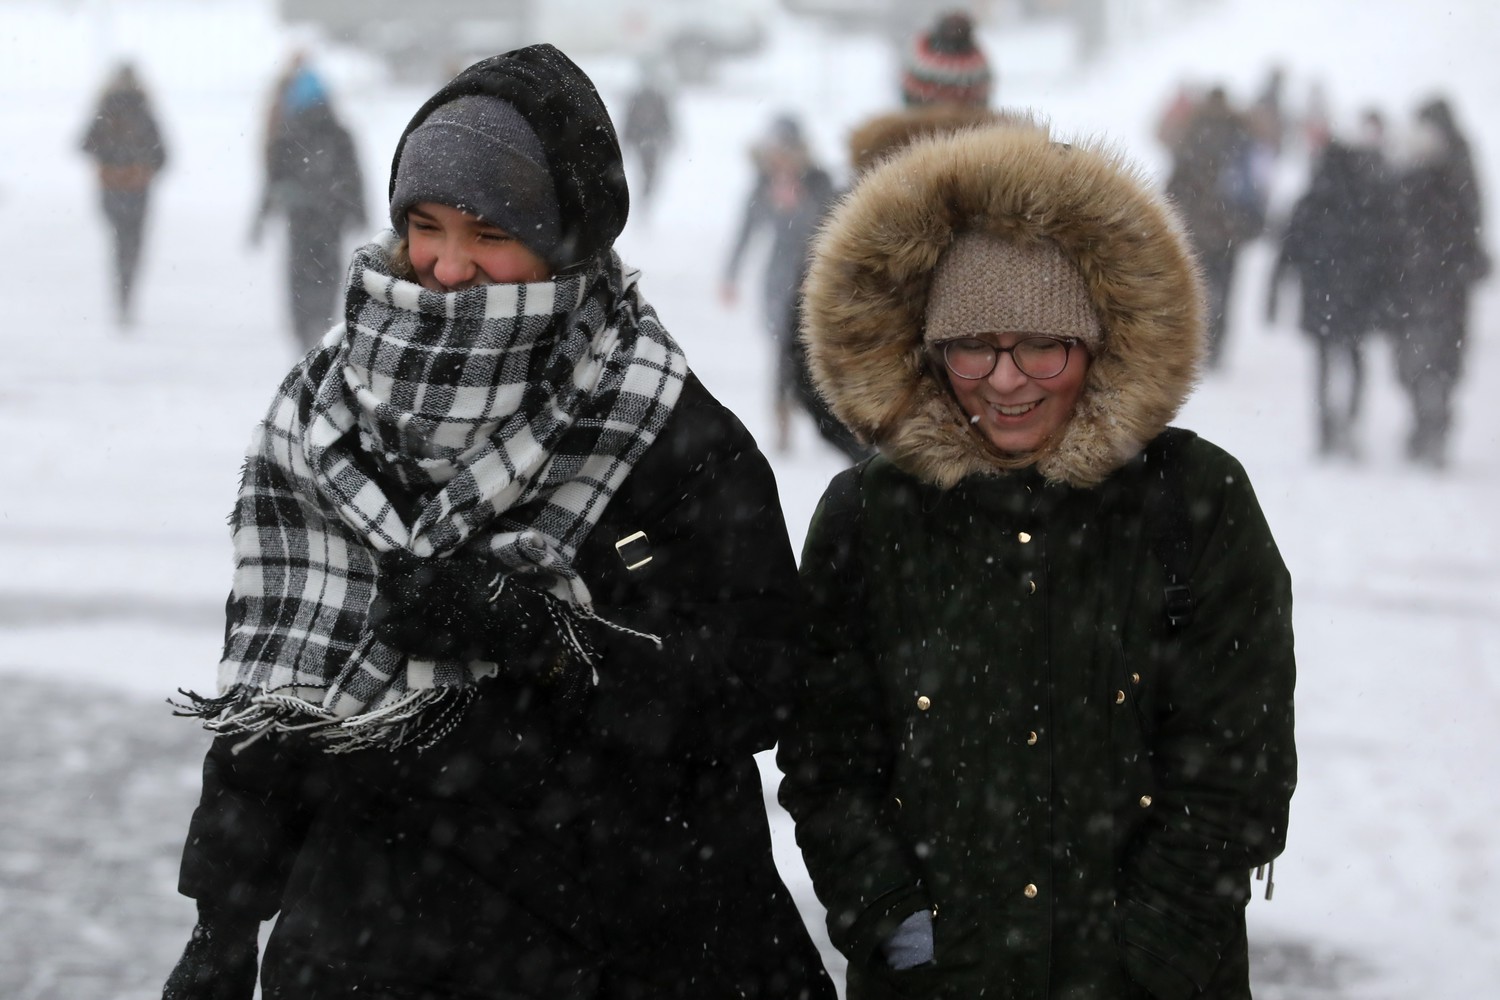 20 29 ноября. Аномальная зима одежда. Зима придет в Московский регион на предстоящей неделе. Минус 13 градусов. В Москве 1 января ожидается до -1 °с.